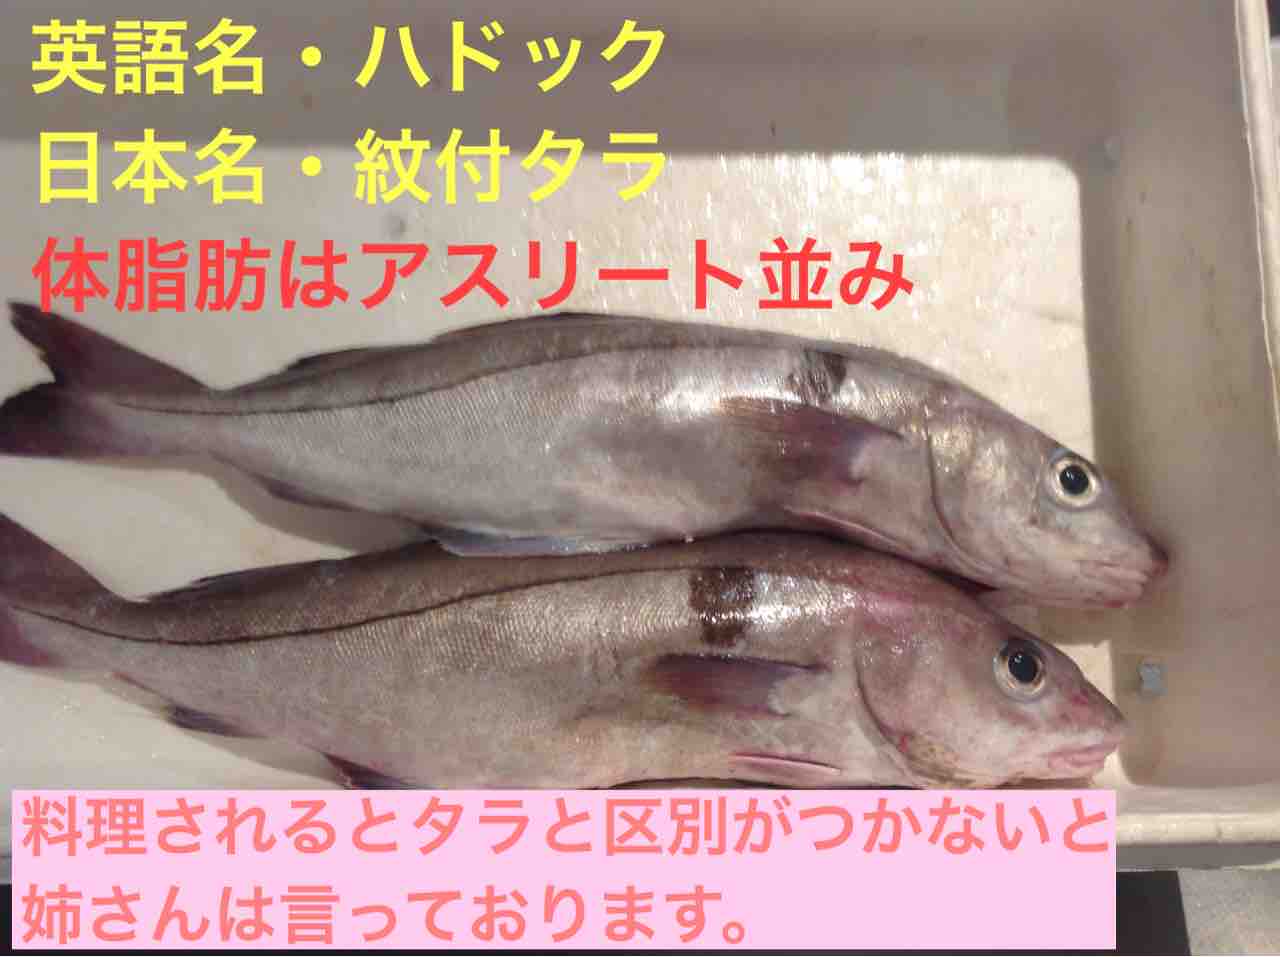 イギリスで食べられるお魚の英語名と日本語名 ロンドンのプリムローズヒルの魚屋 プリヒル姉さんのブログ